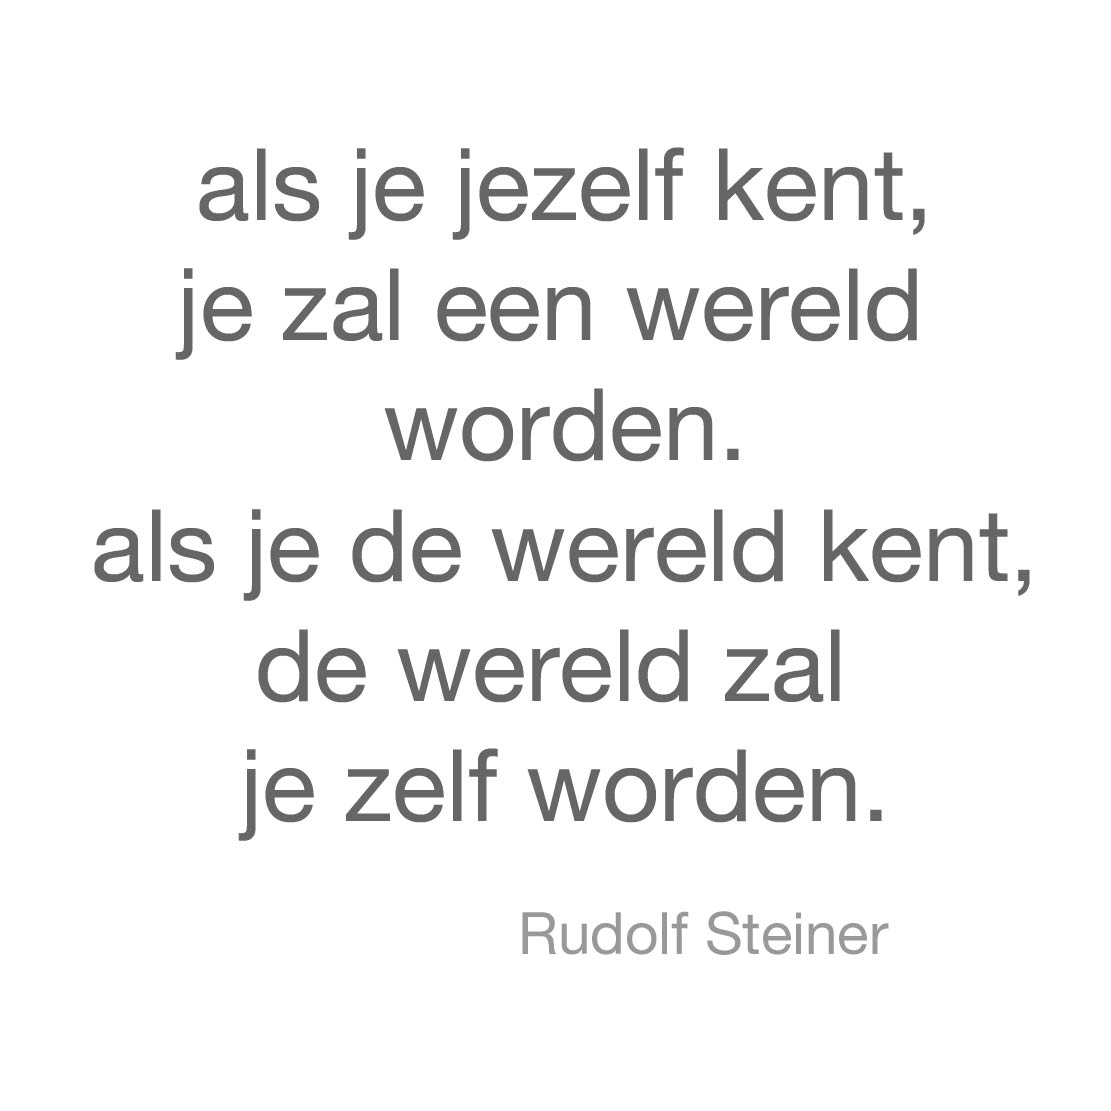 quote by Rudolf Steiner